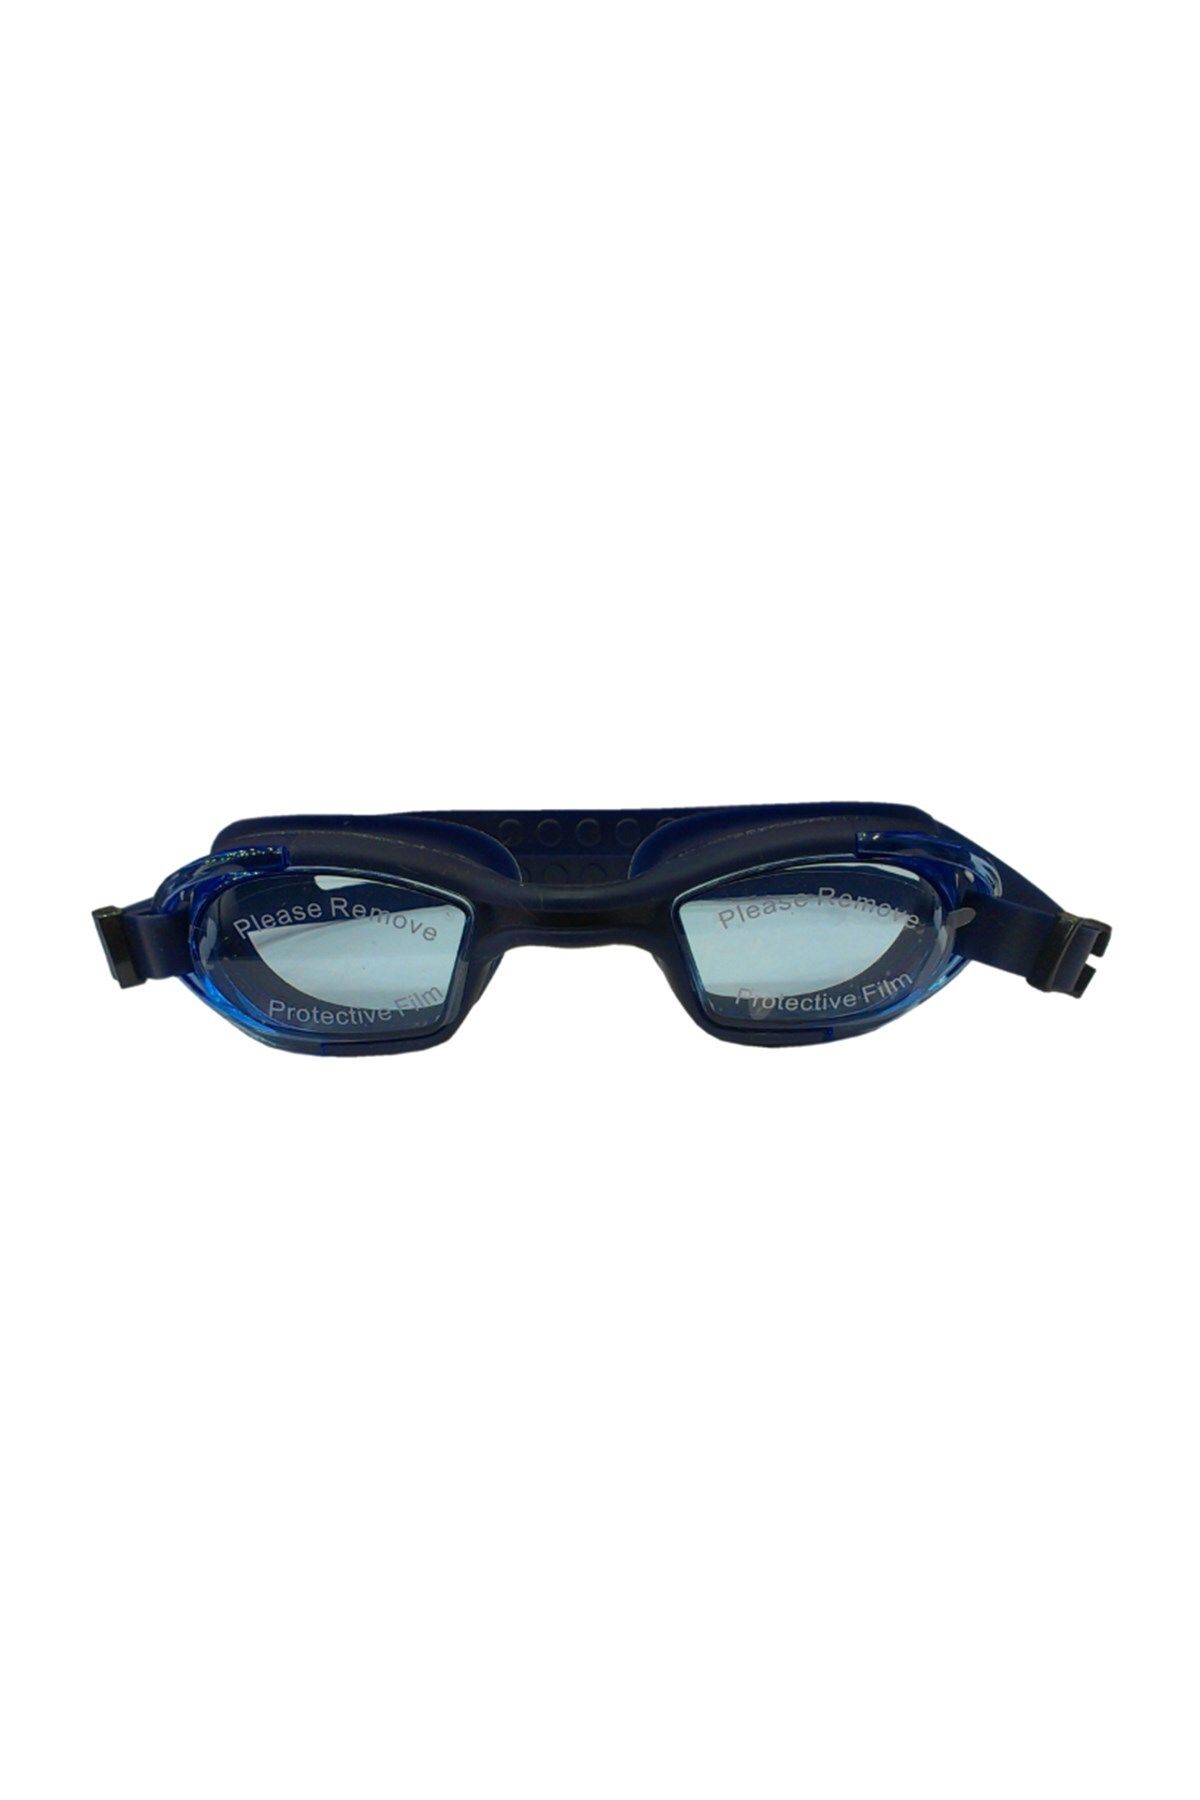 SELEX Sg 2600 Yüzücü Gözlüğü Navy Blue Silikon & Antifog